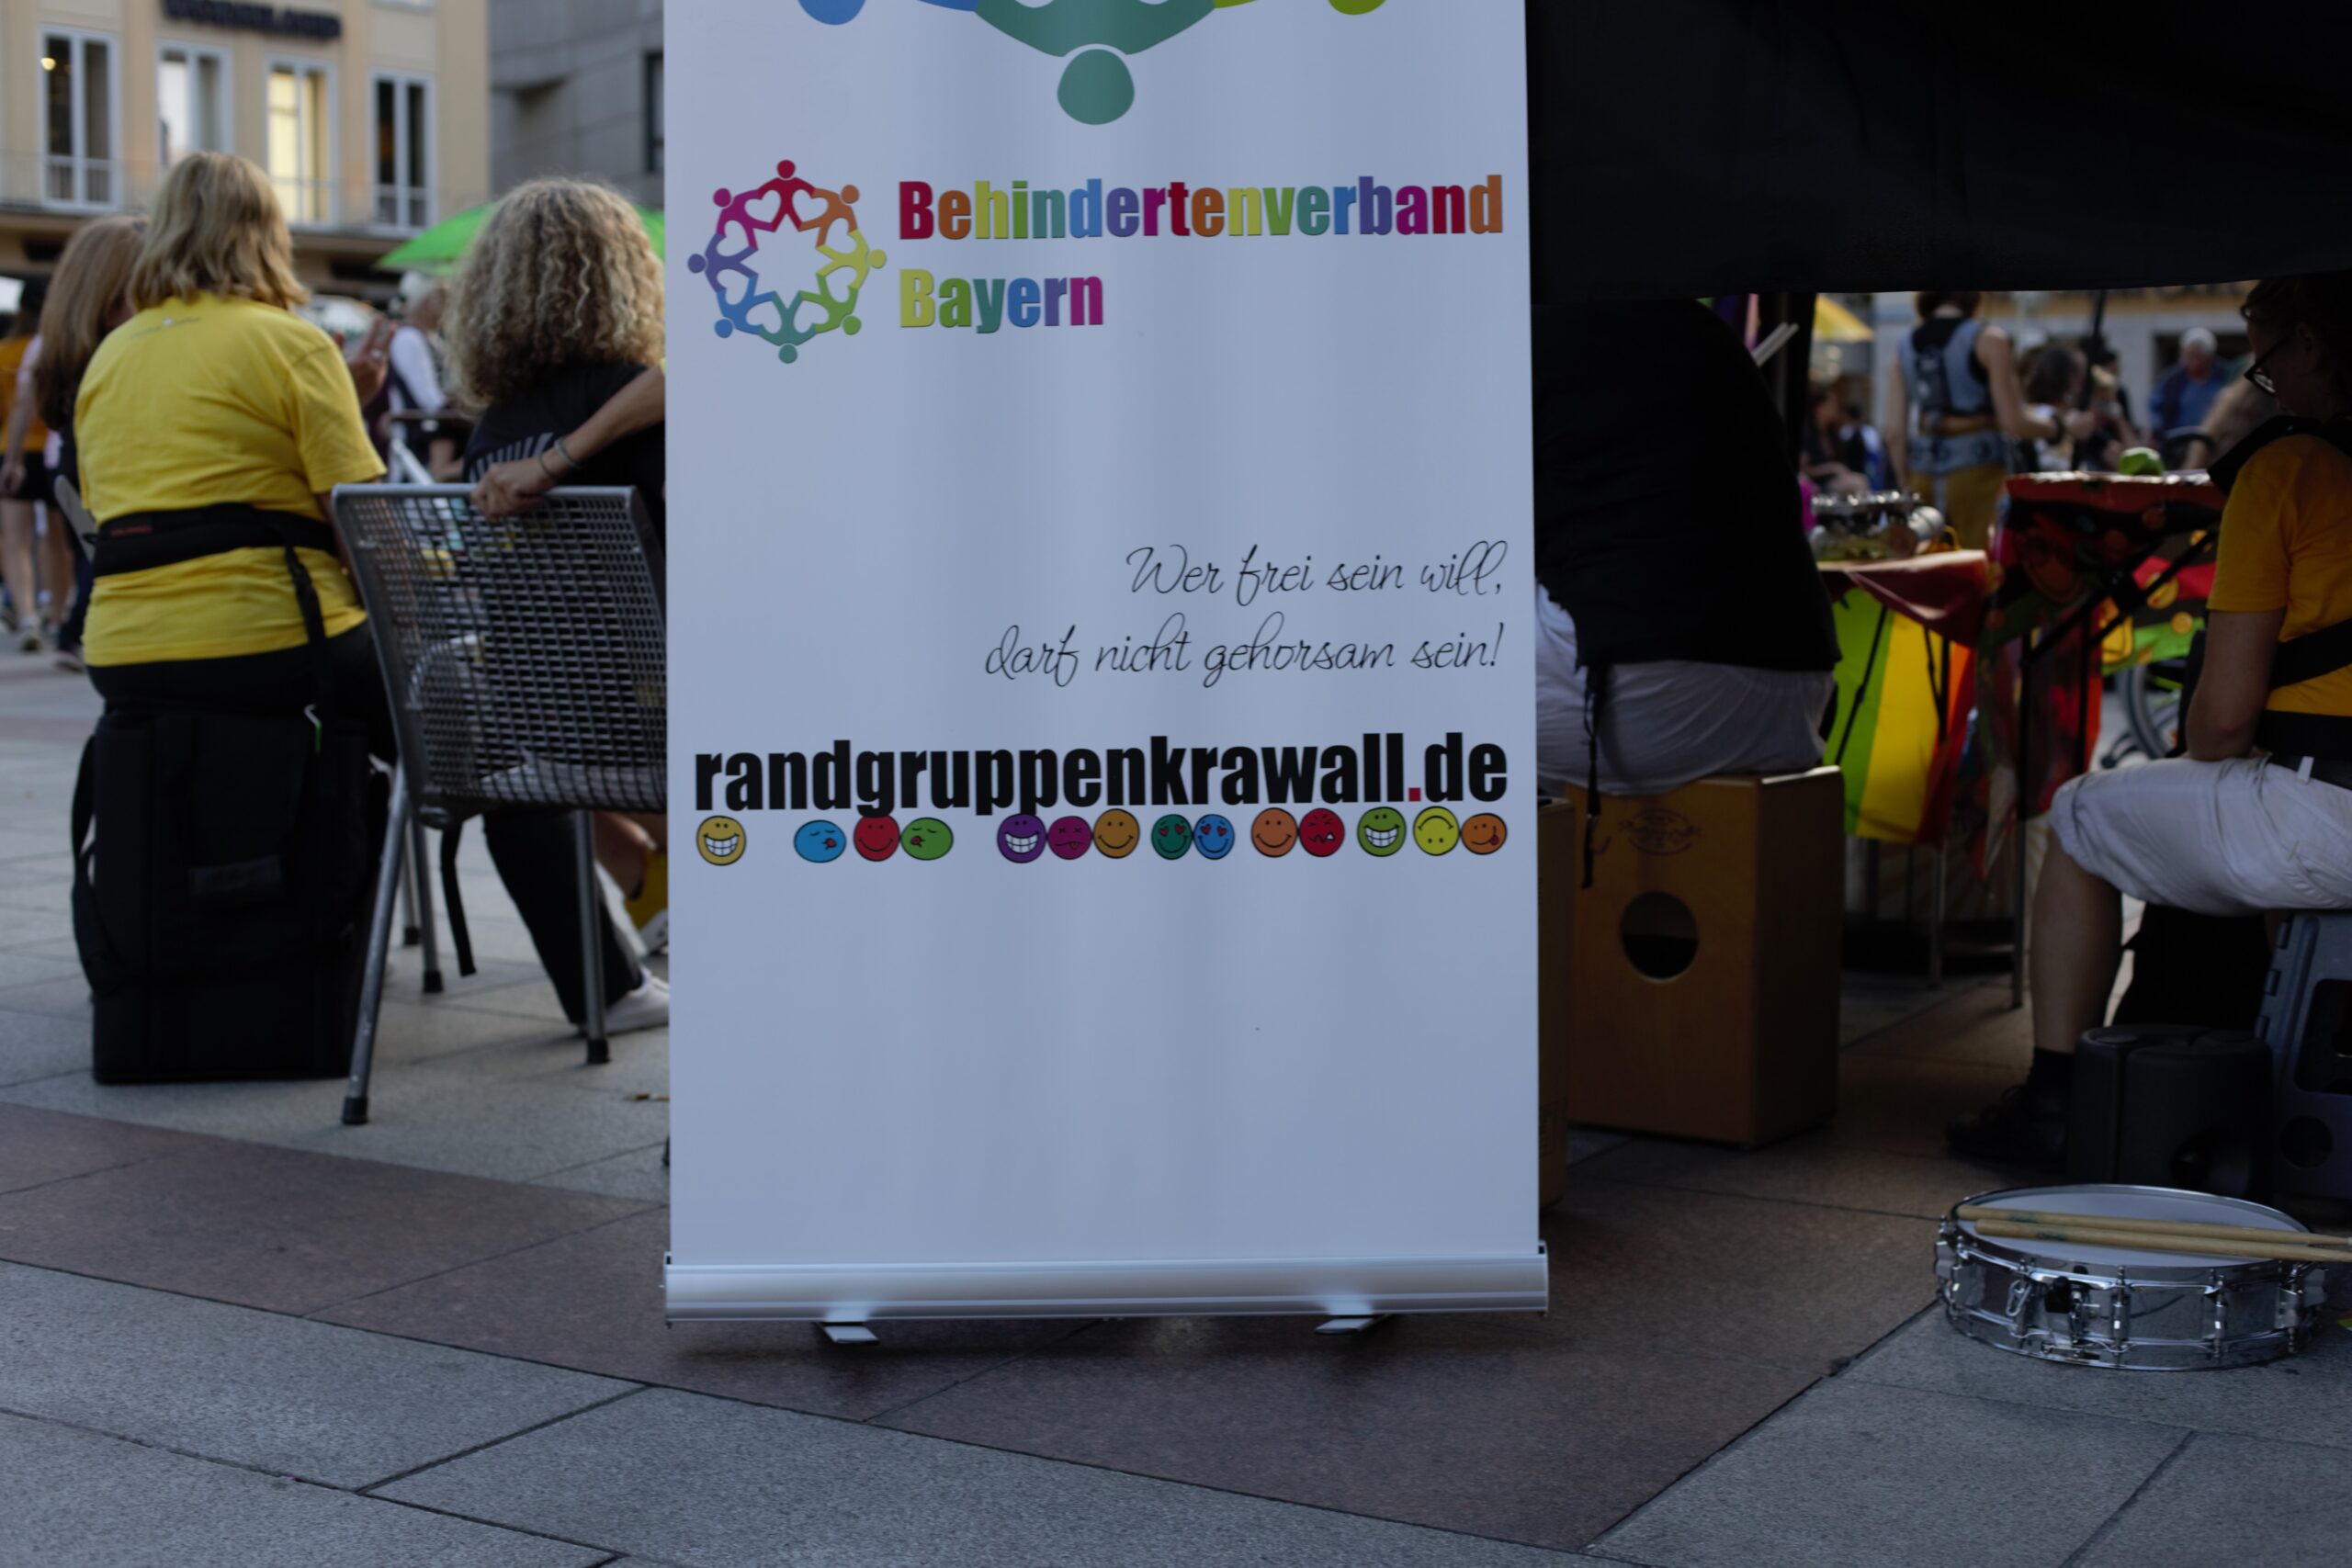 Aufschrift: Behindertenverband Bayern, Wer frei sein will, darf nicht gehorsam sein", Randgruppenkrawall